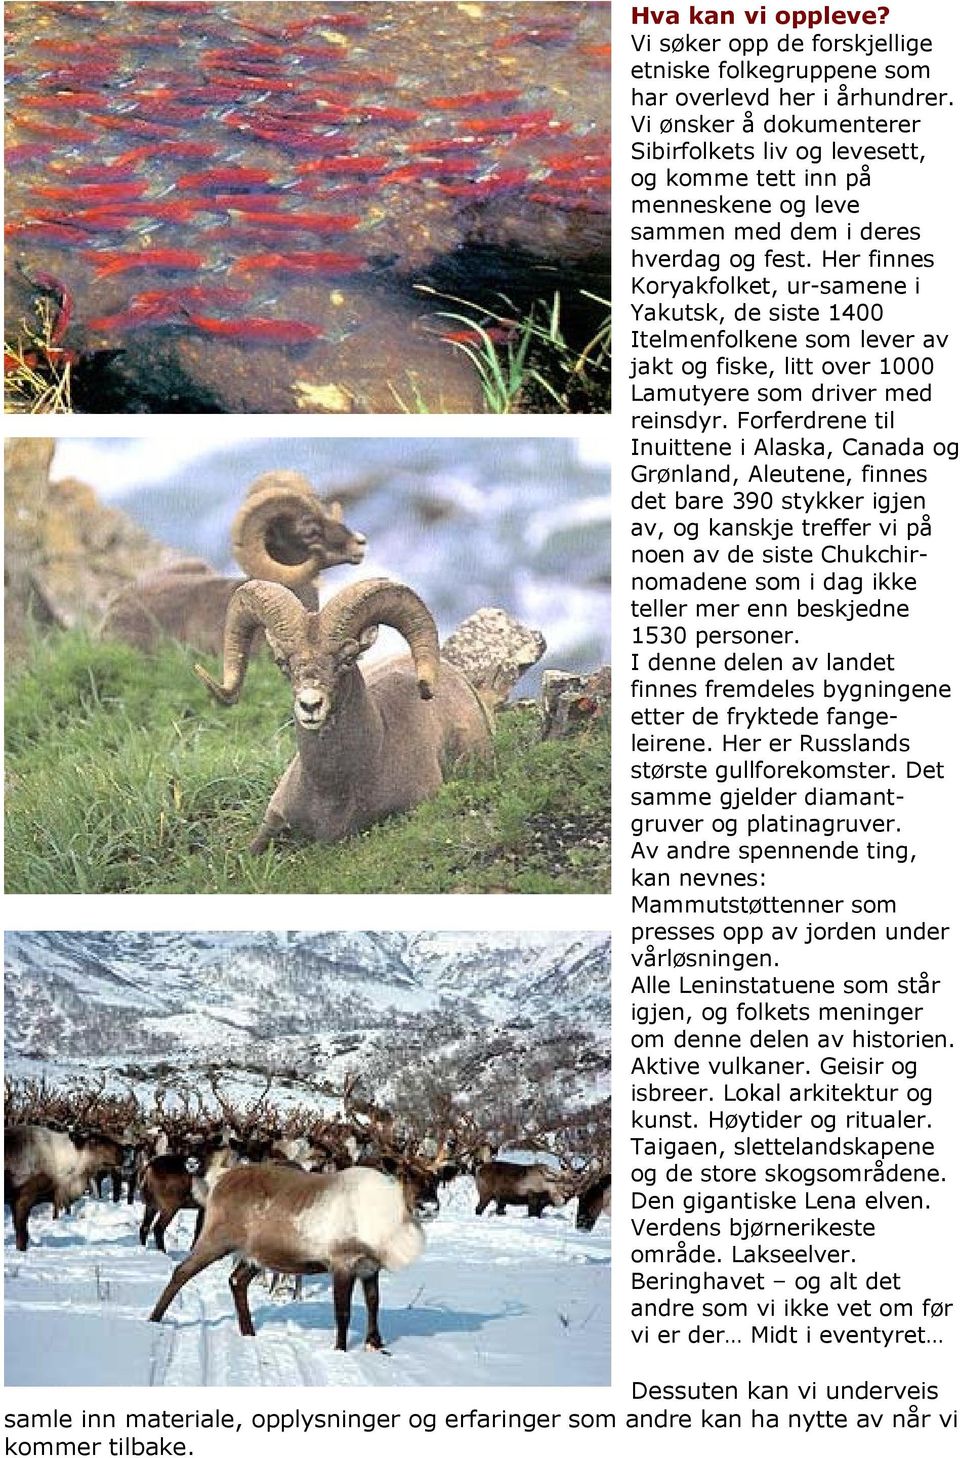 Her finnes Koryakfolket, ur-samene i Yakutsk, de siste 1400 Itelmenfolkene som lever av jakt og fiske, litt over 1000 Lamutyere som driver med reinsdyr.